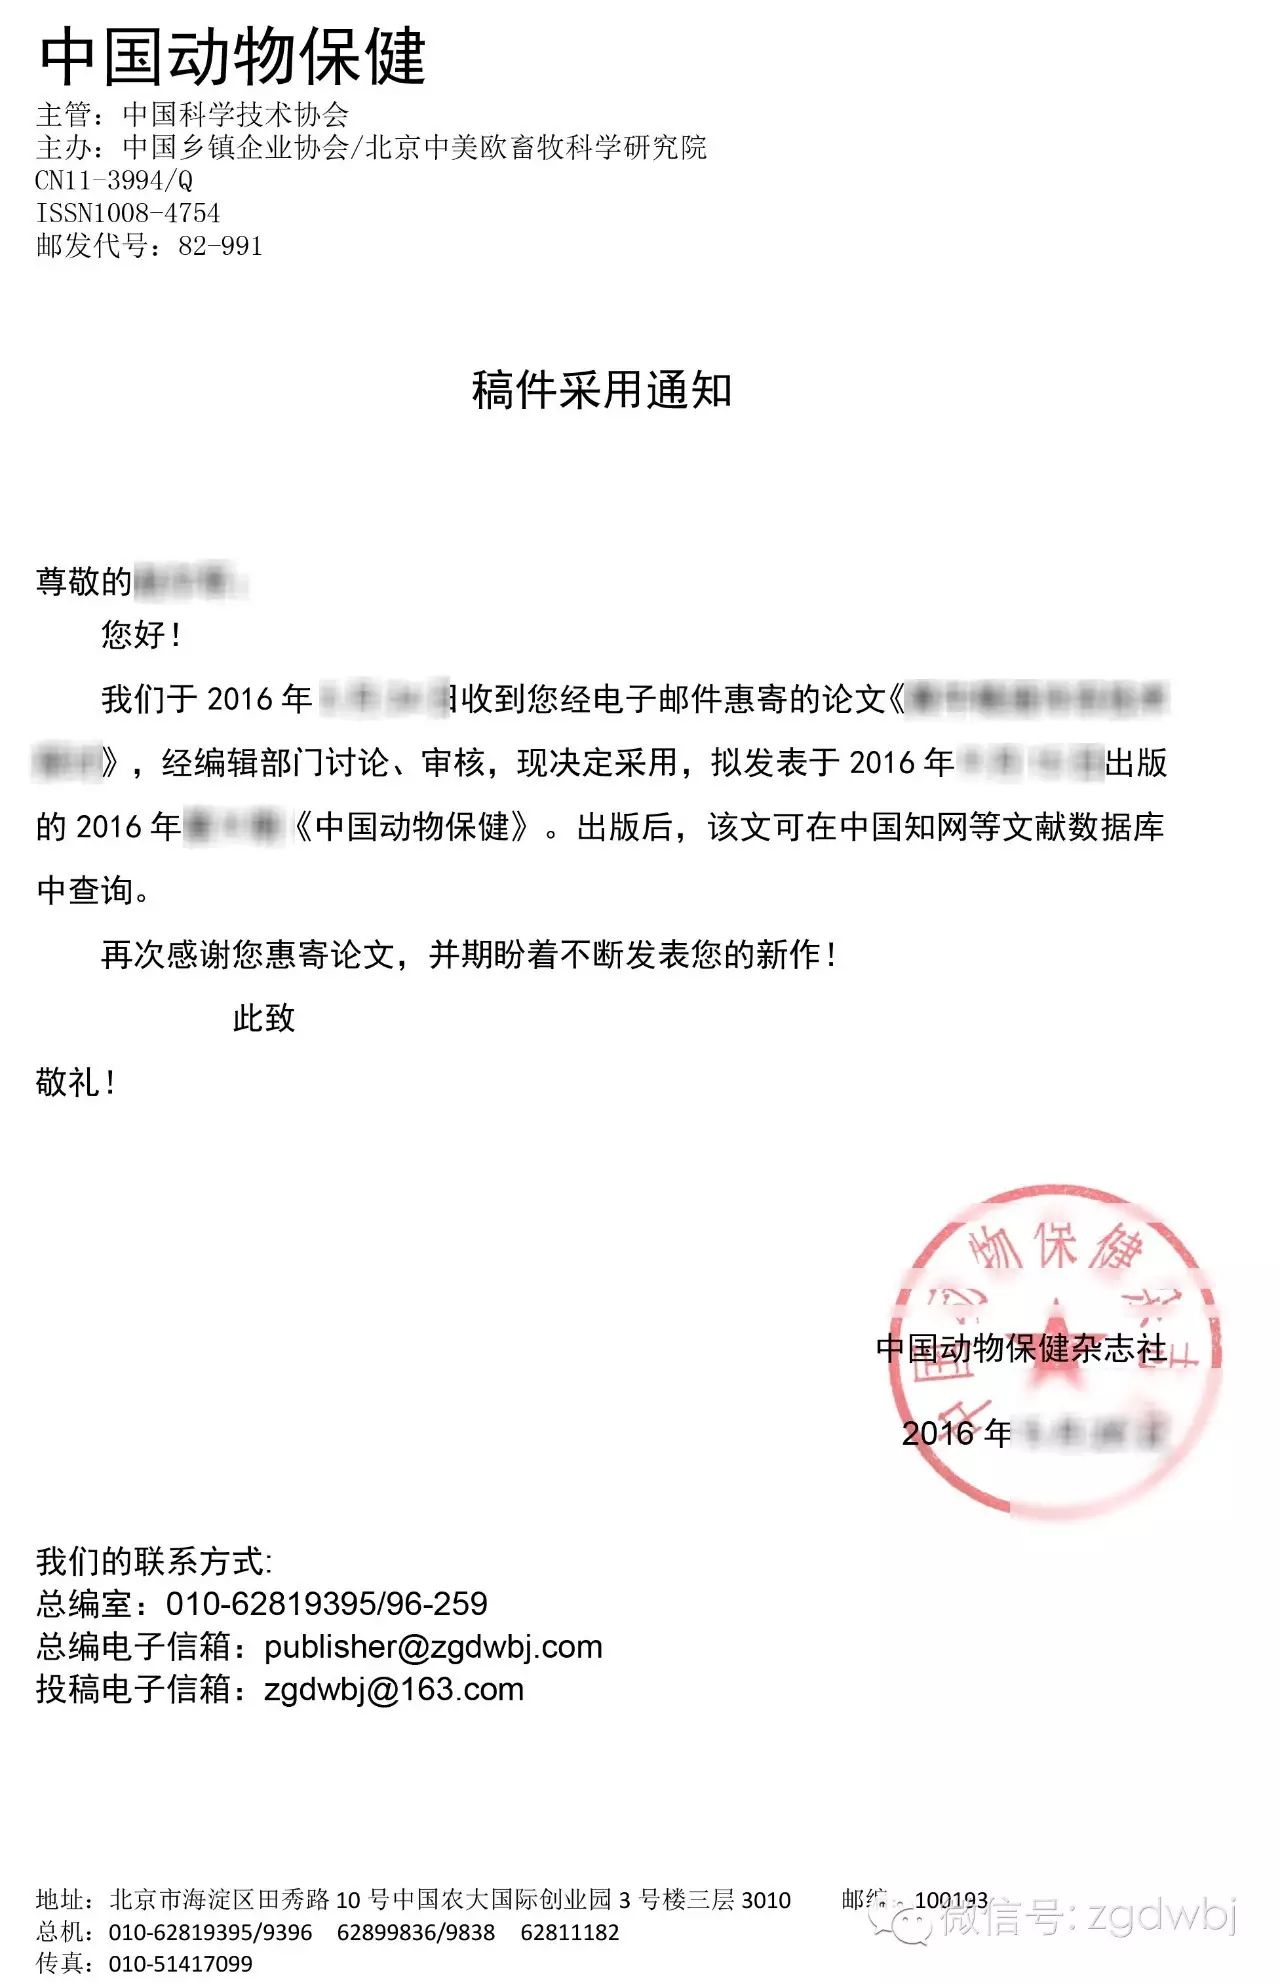 《中国动物保健》稿件录用防伪系统正式开启